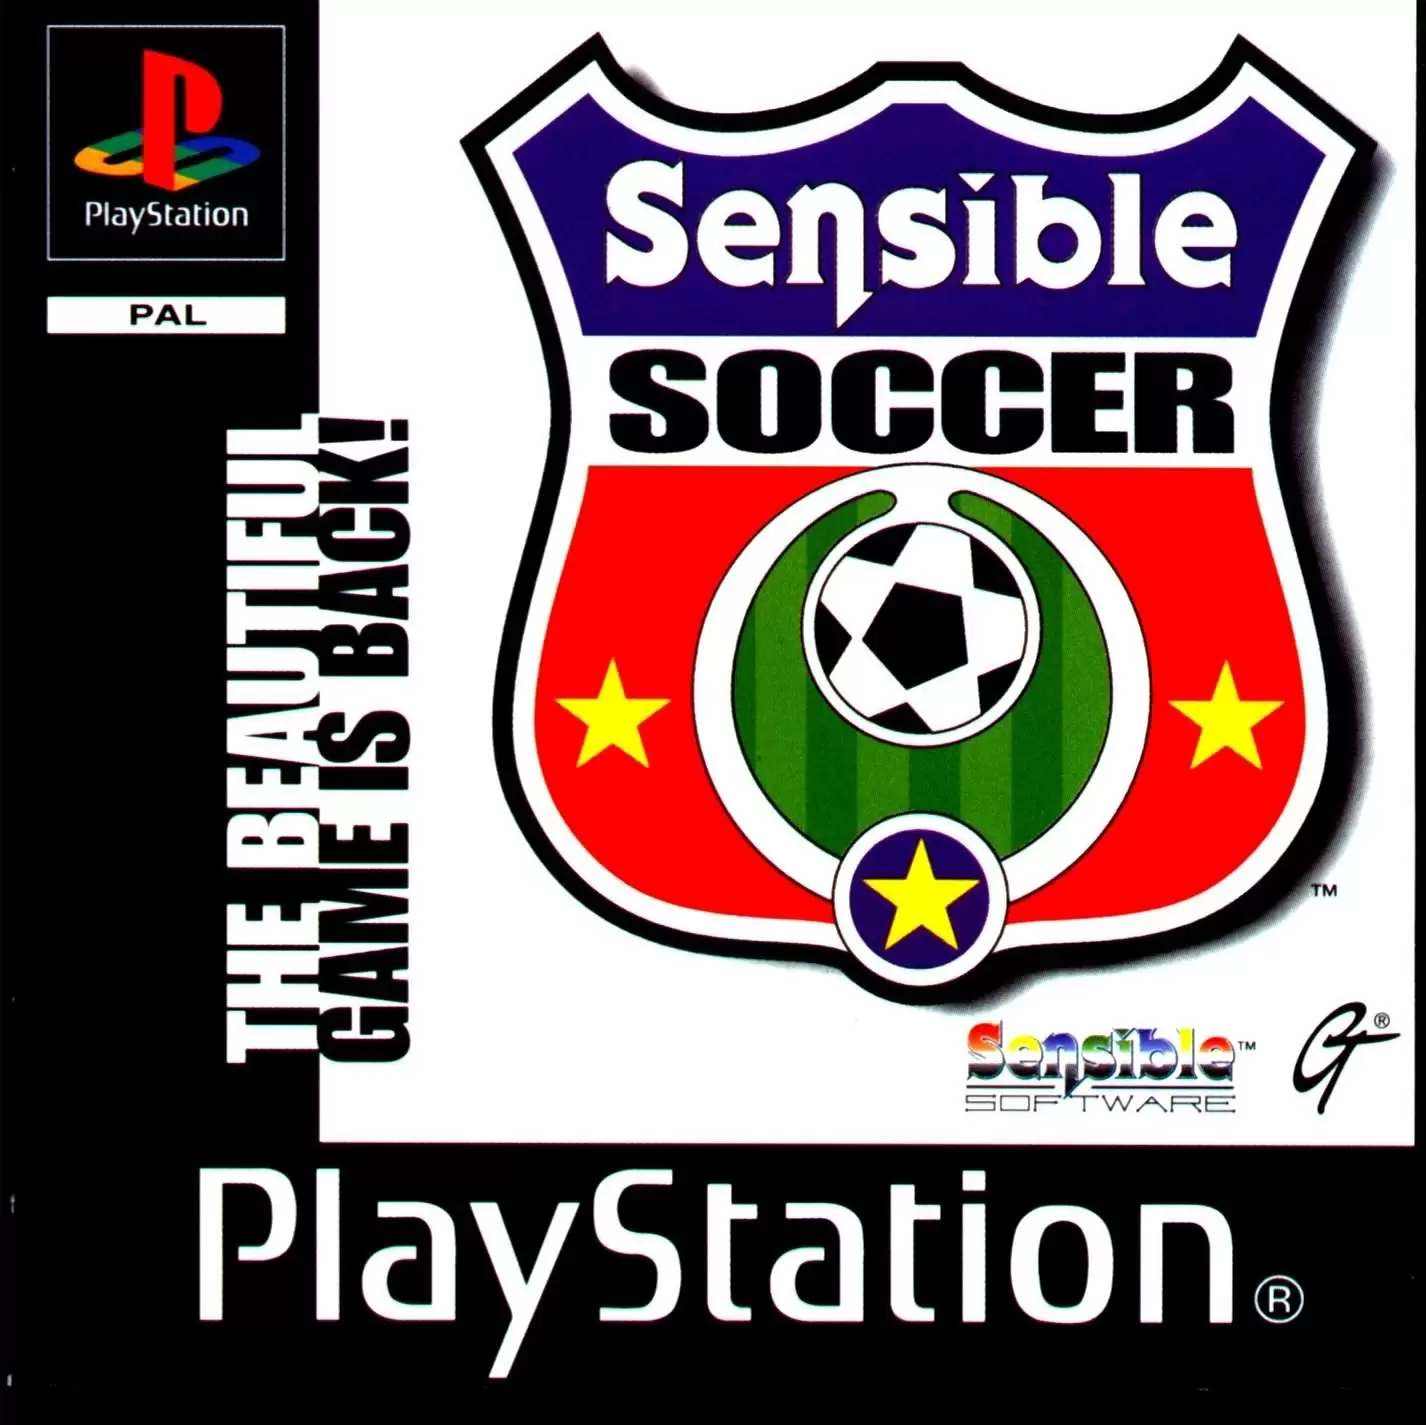 Playstation games - Sensible Soccer